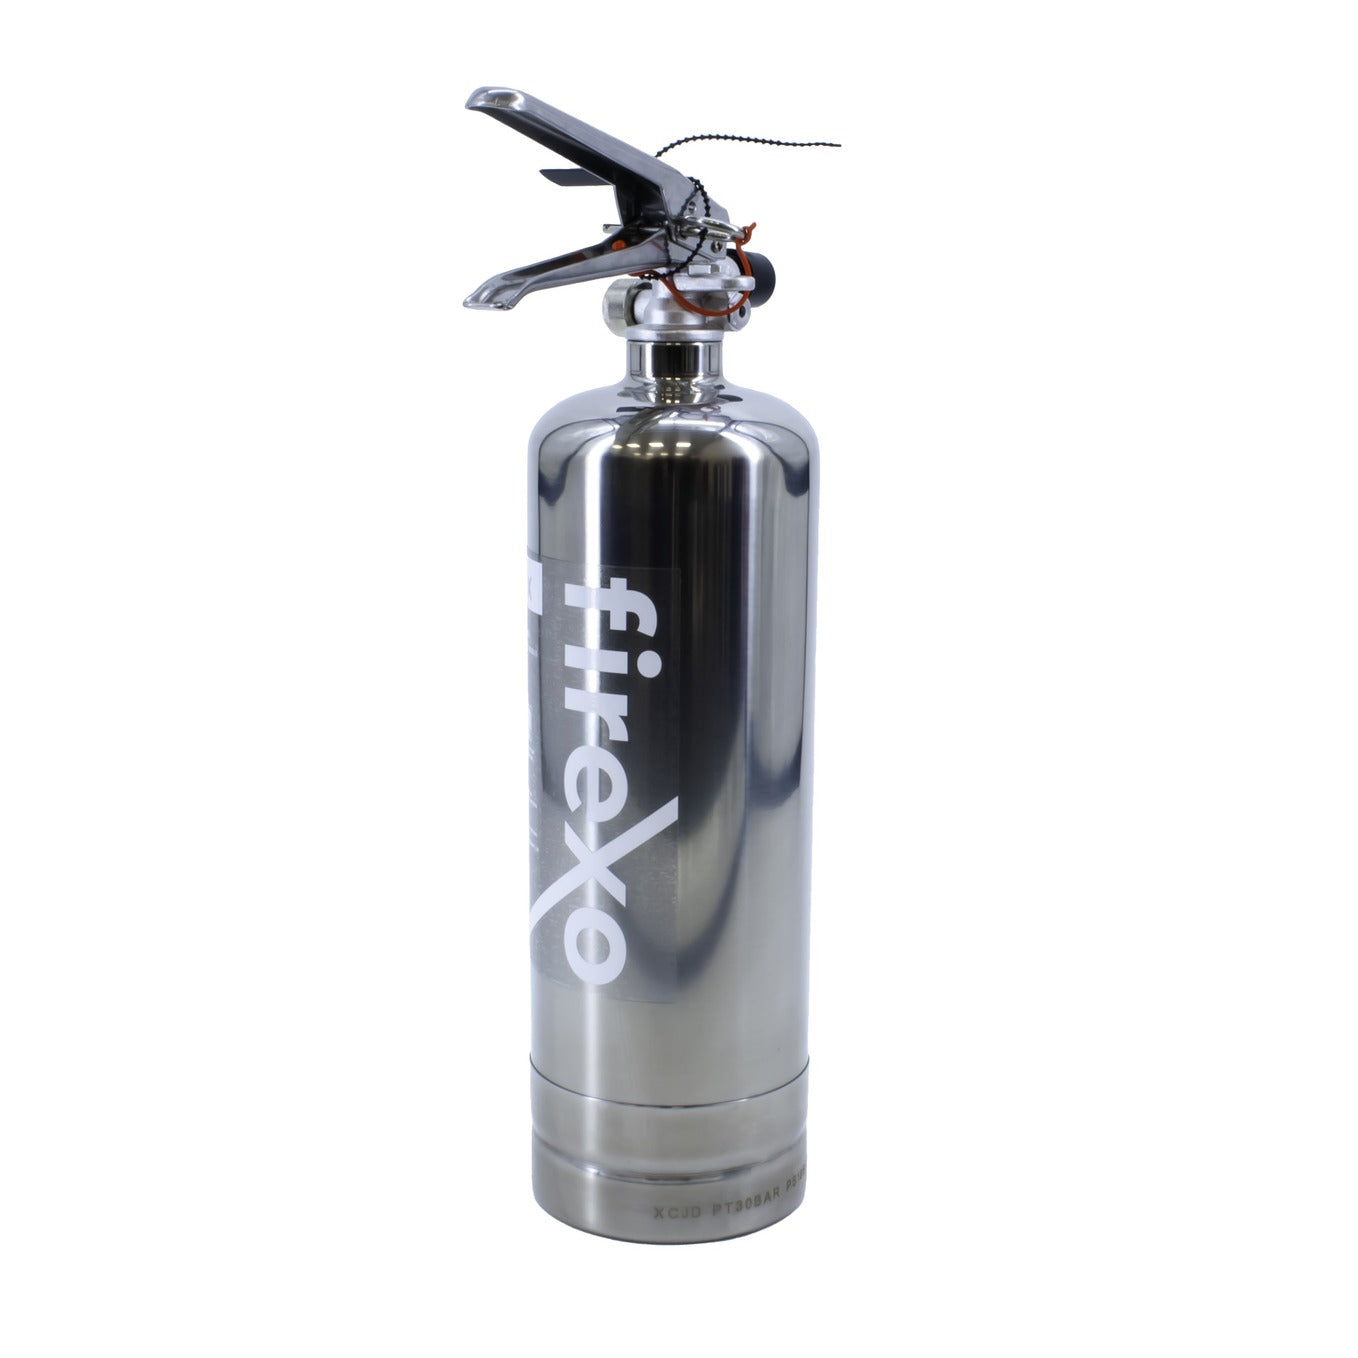 Firexo 2-litrowa gaśnica ze stali nierdzewnej 